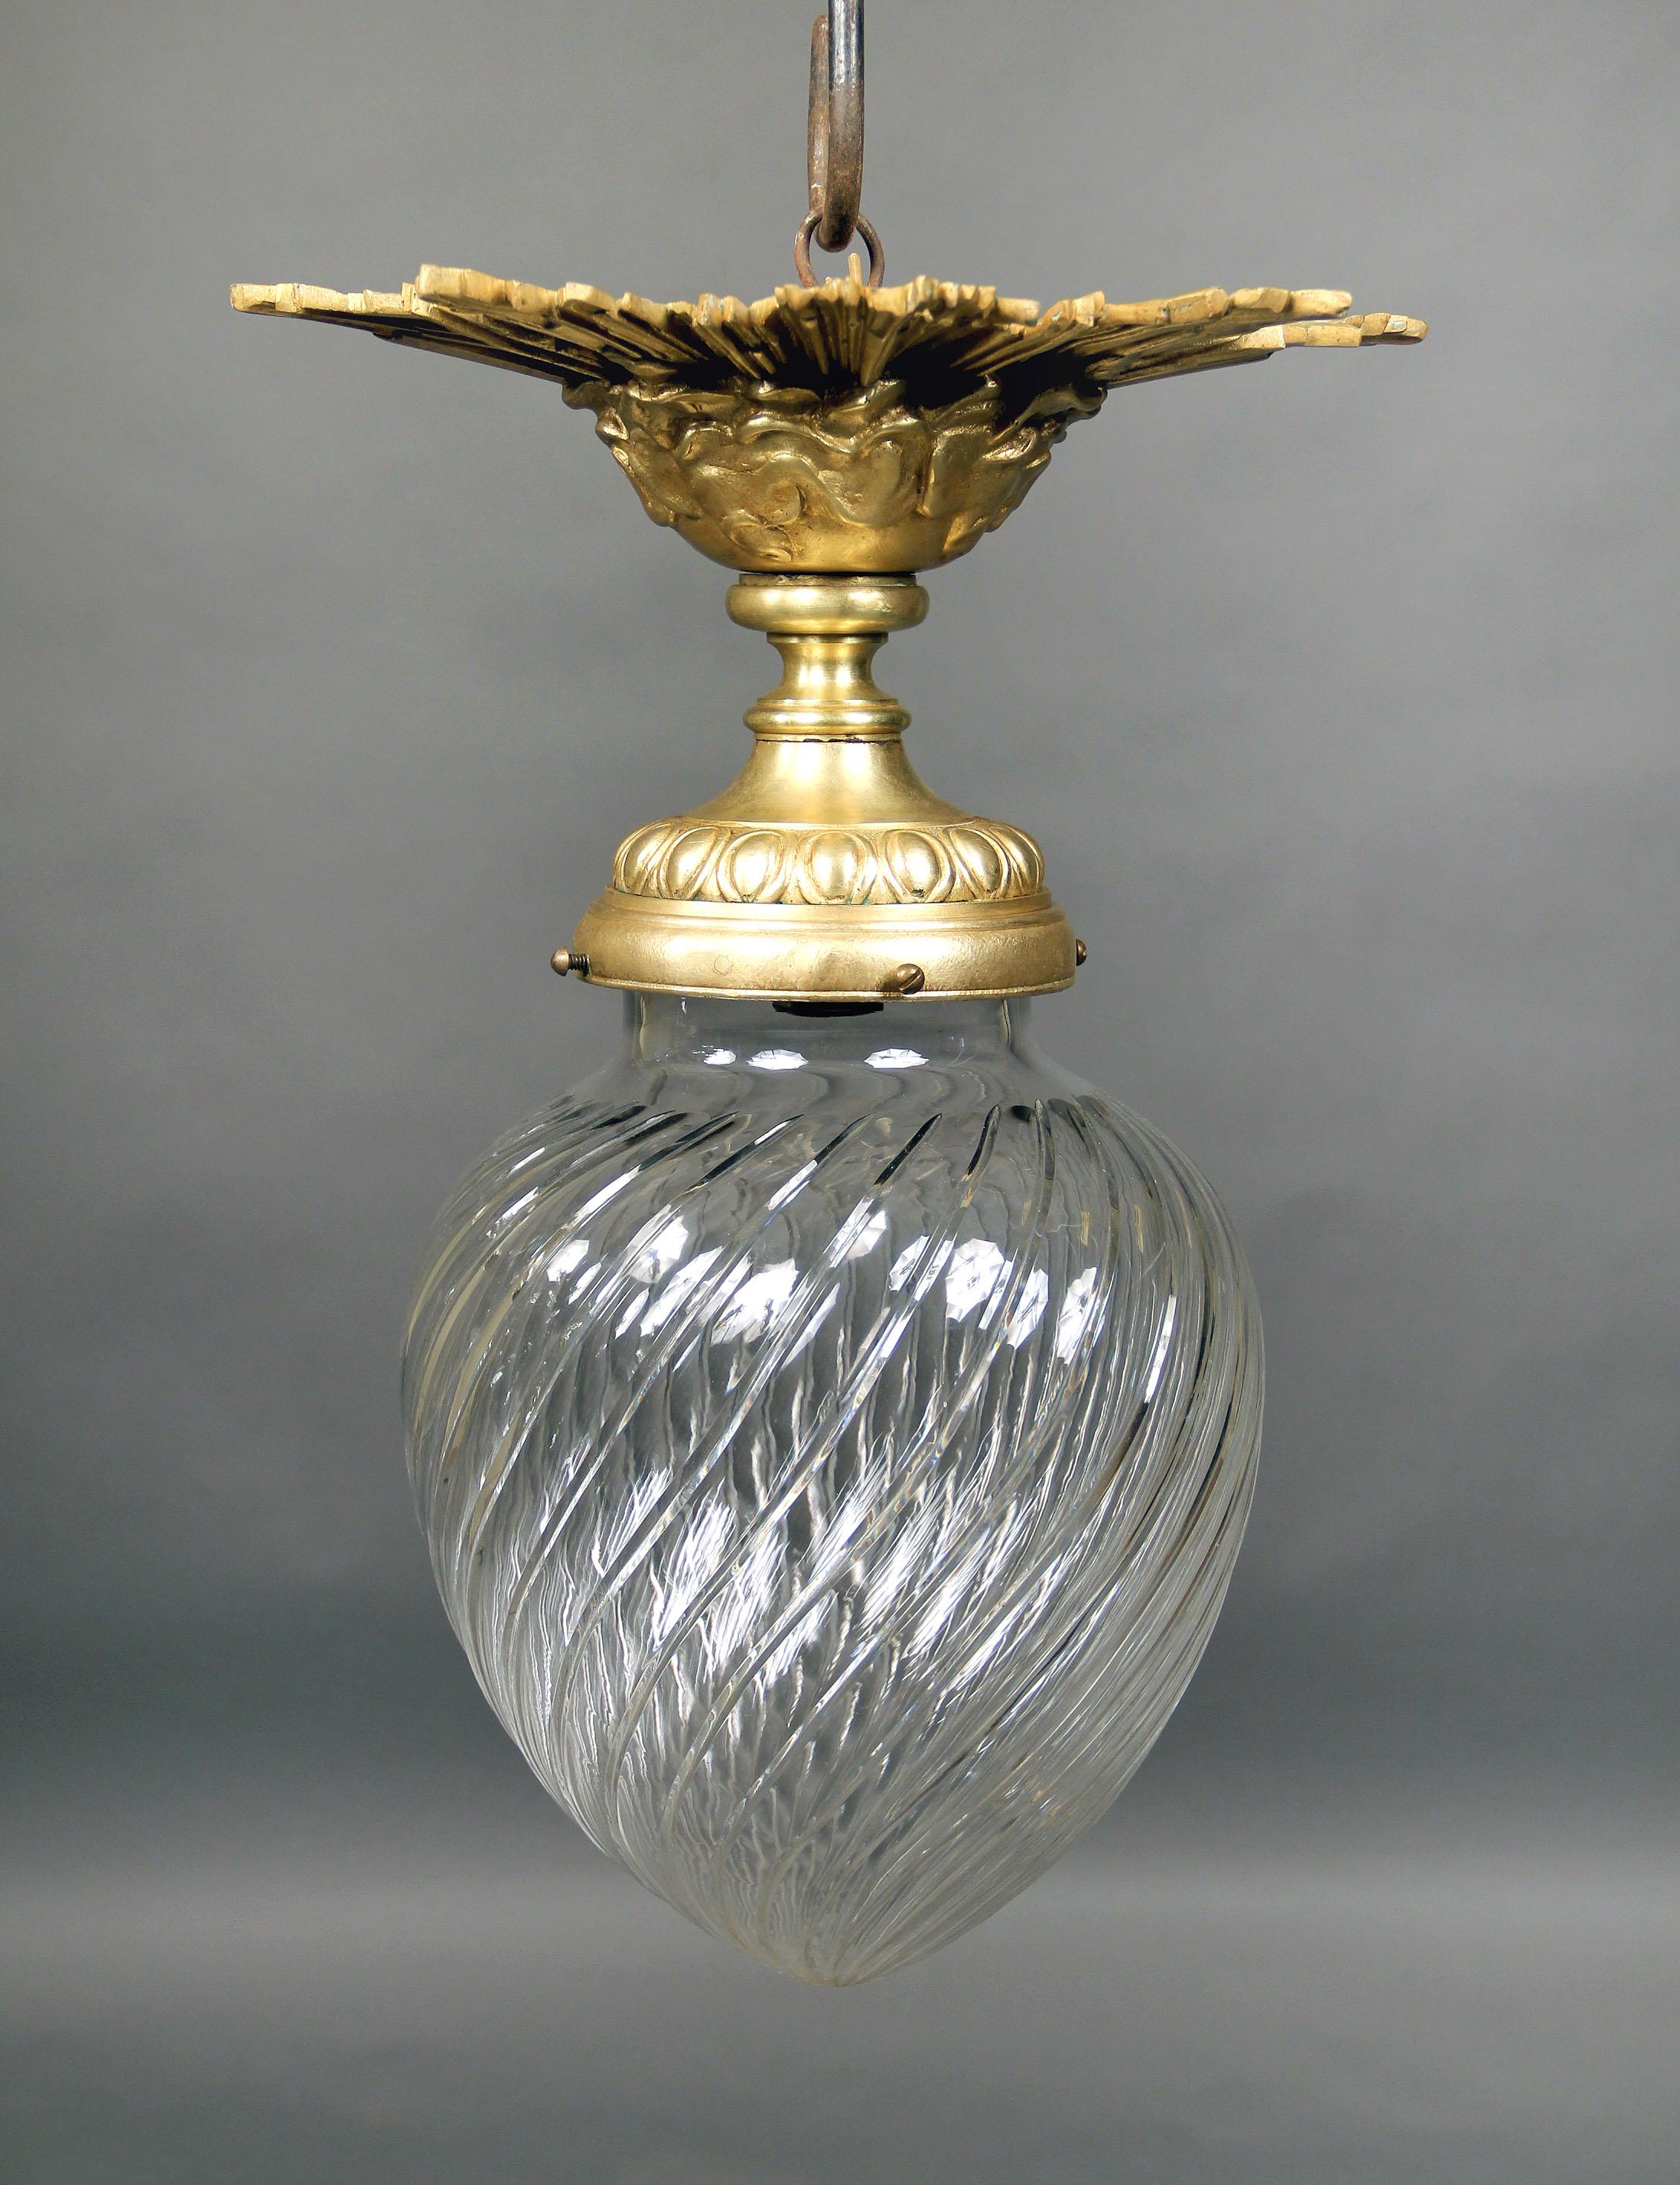 Schöner Plafonnier aus vergoldeter Bronze und Glas aus dem frühen 20. Jahrhundert

Artikel # 7950

Sonnenschliffplatte mit spiralförmigem Glasschirm.